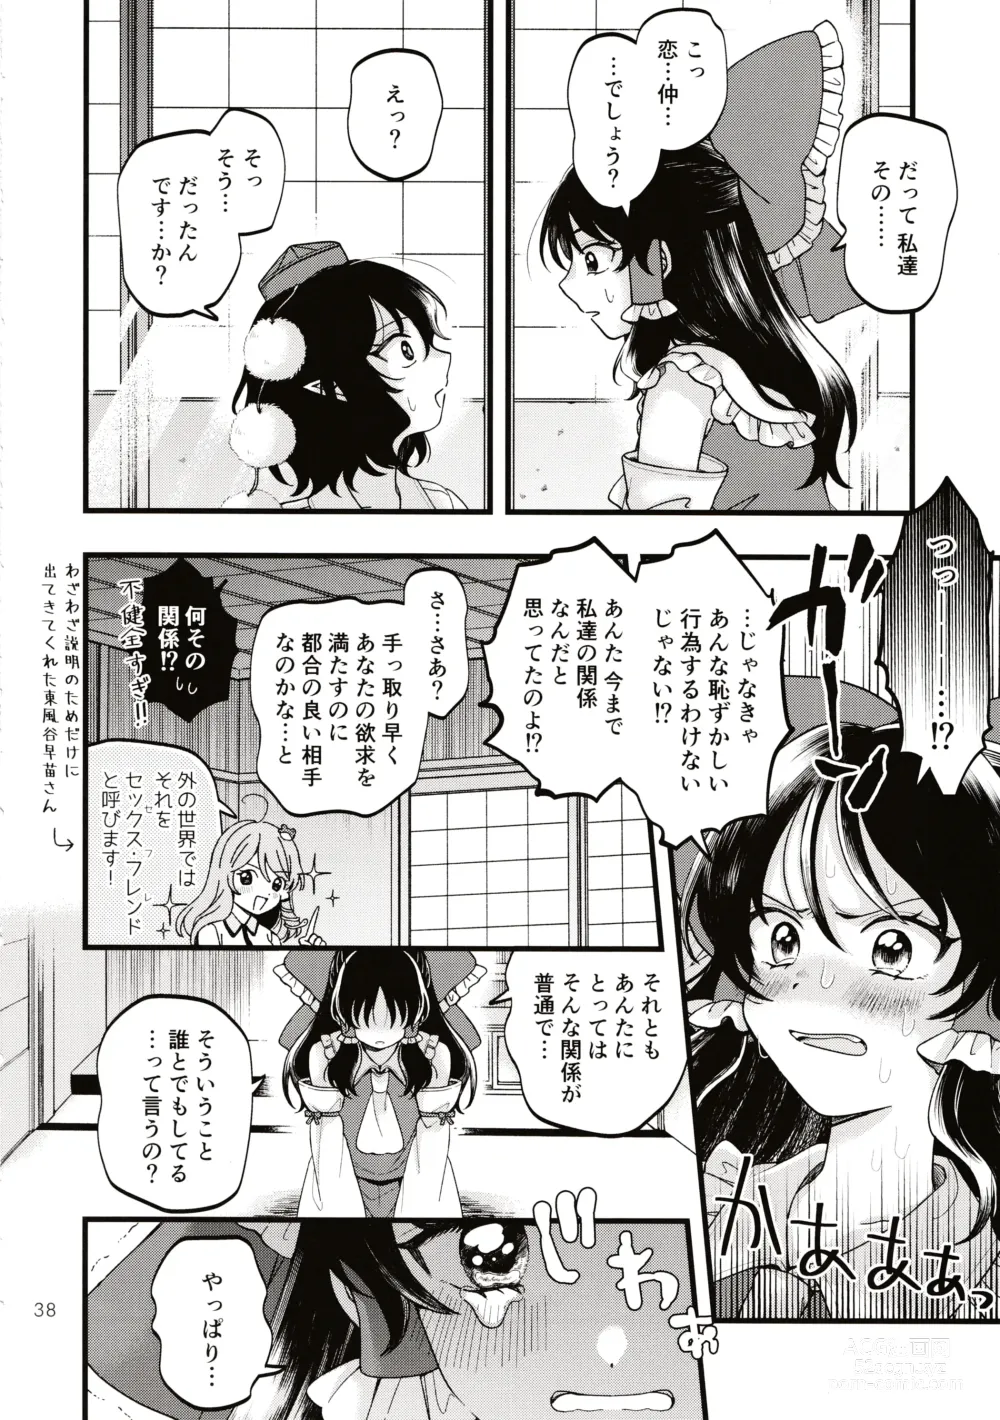 Page 37 of doujinshi Rubeus no Kankai